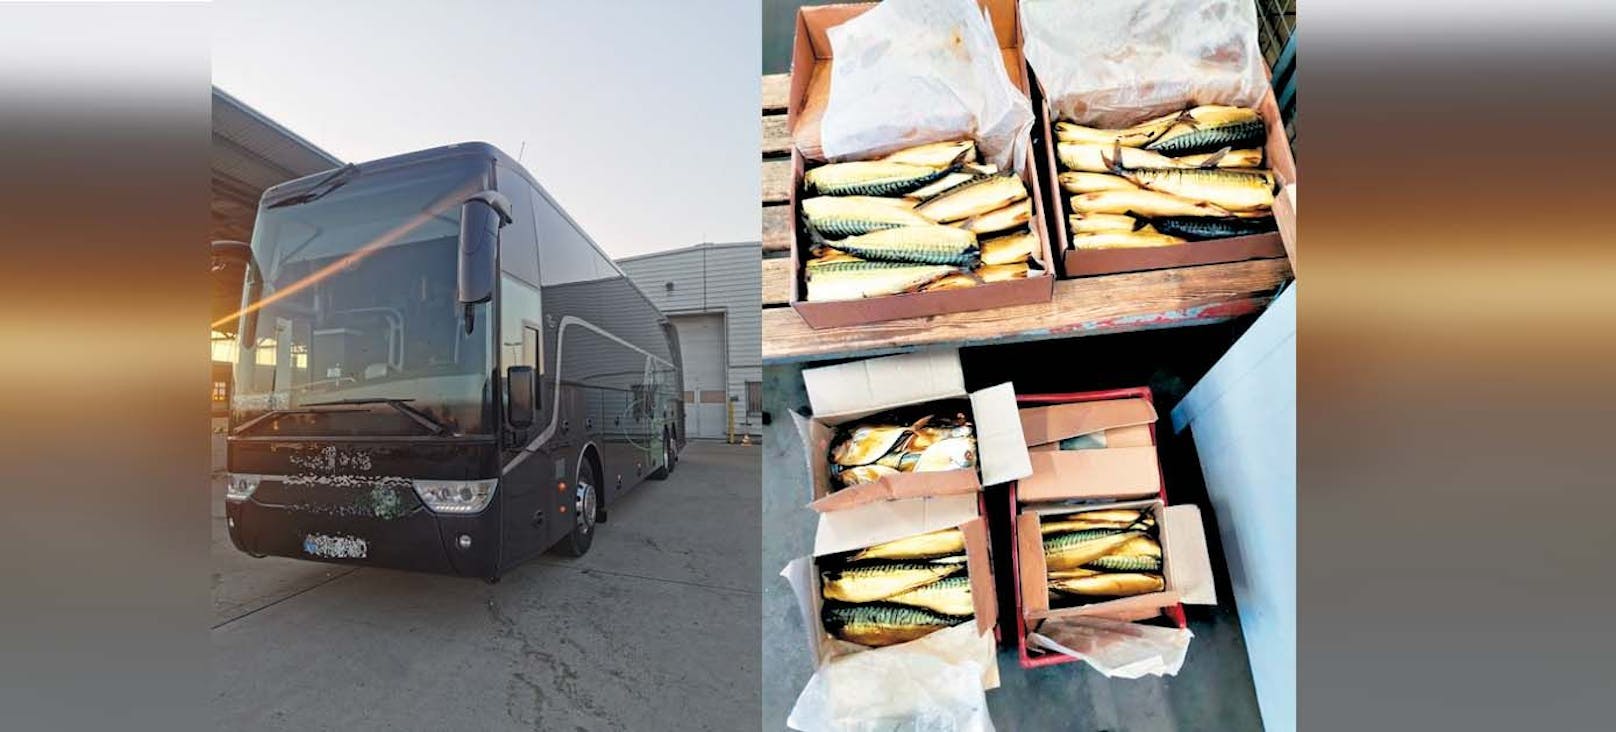 Reisebus entpuppte sich als illegaler Fisch-Transport